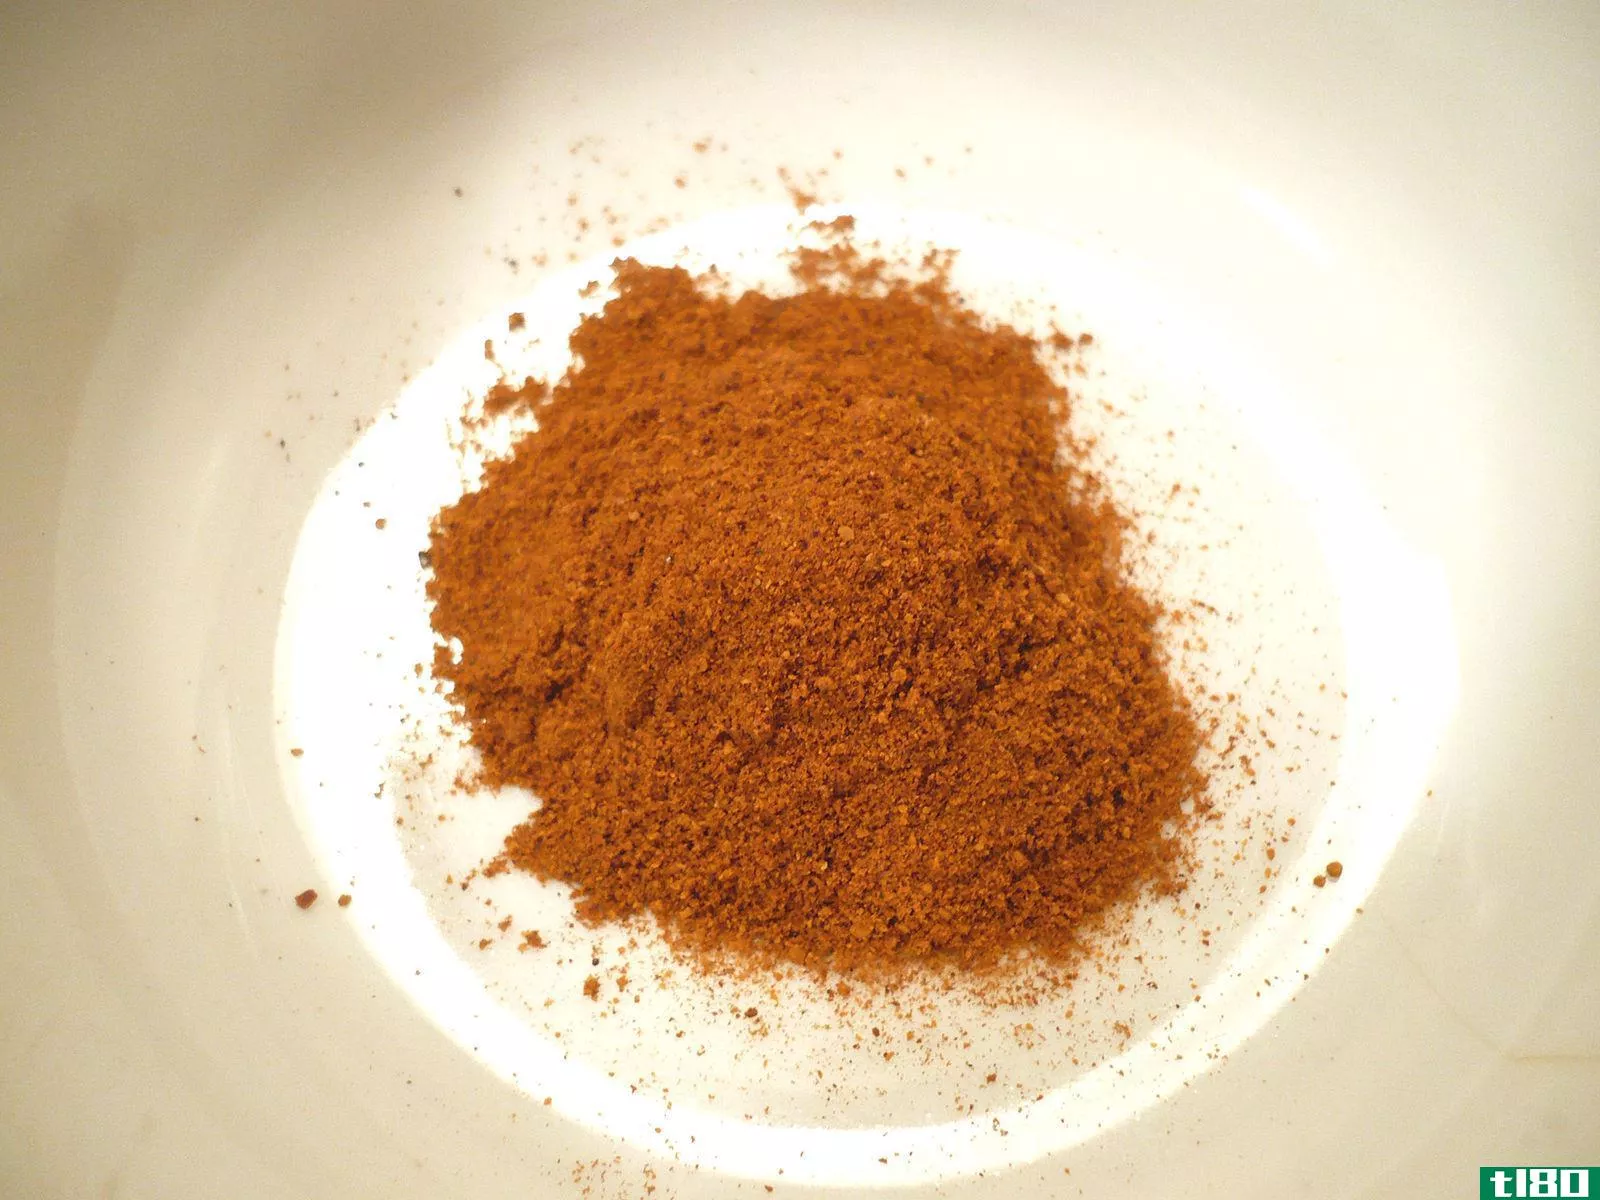 五香辣椒粉(chili powder)和安可辣椒粉(ancho chili powder)的区别